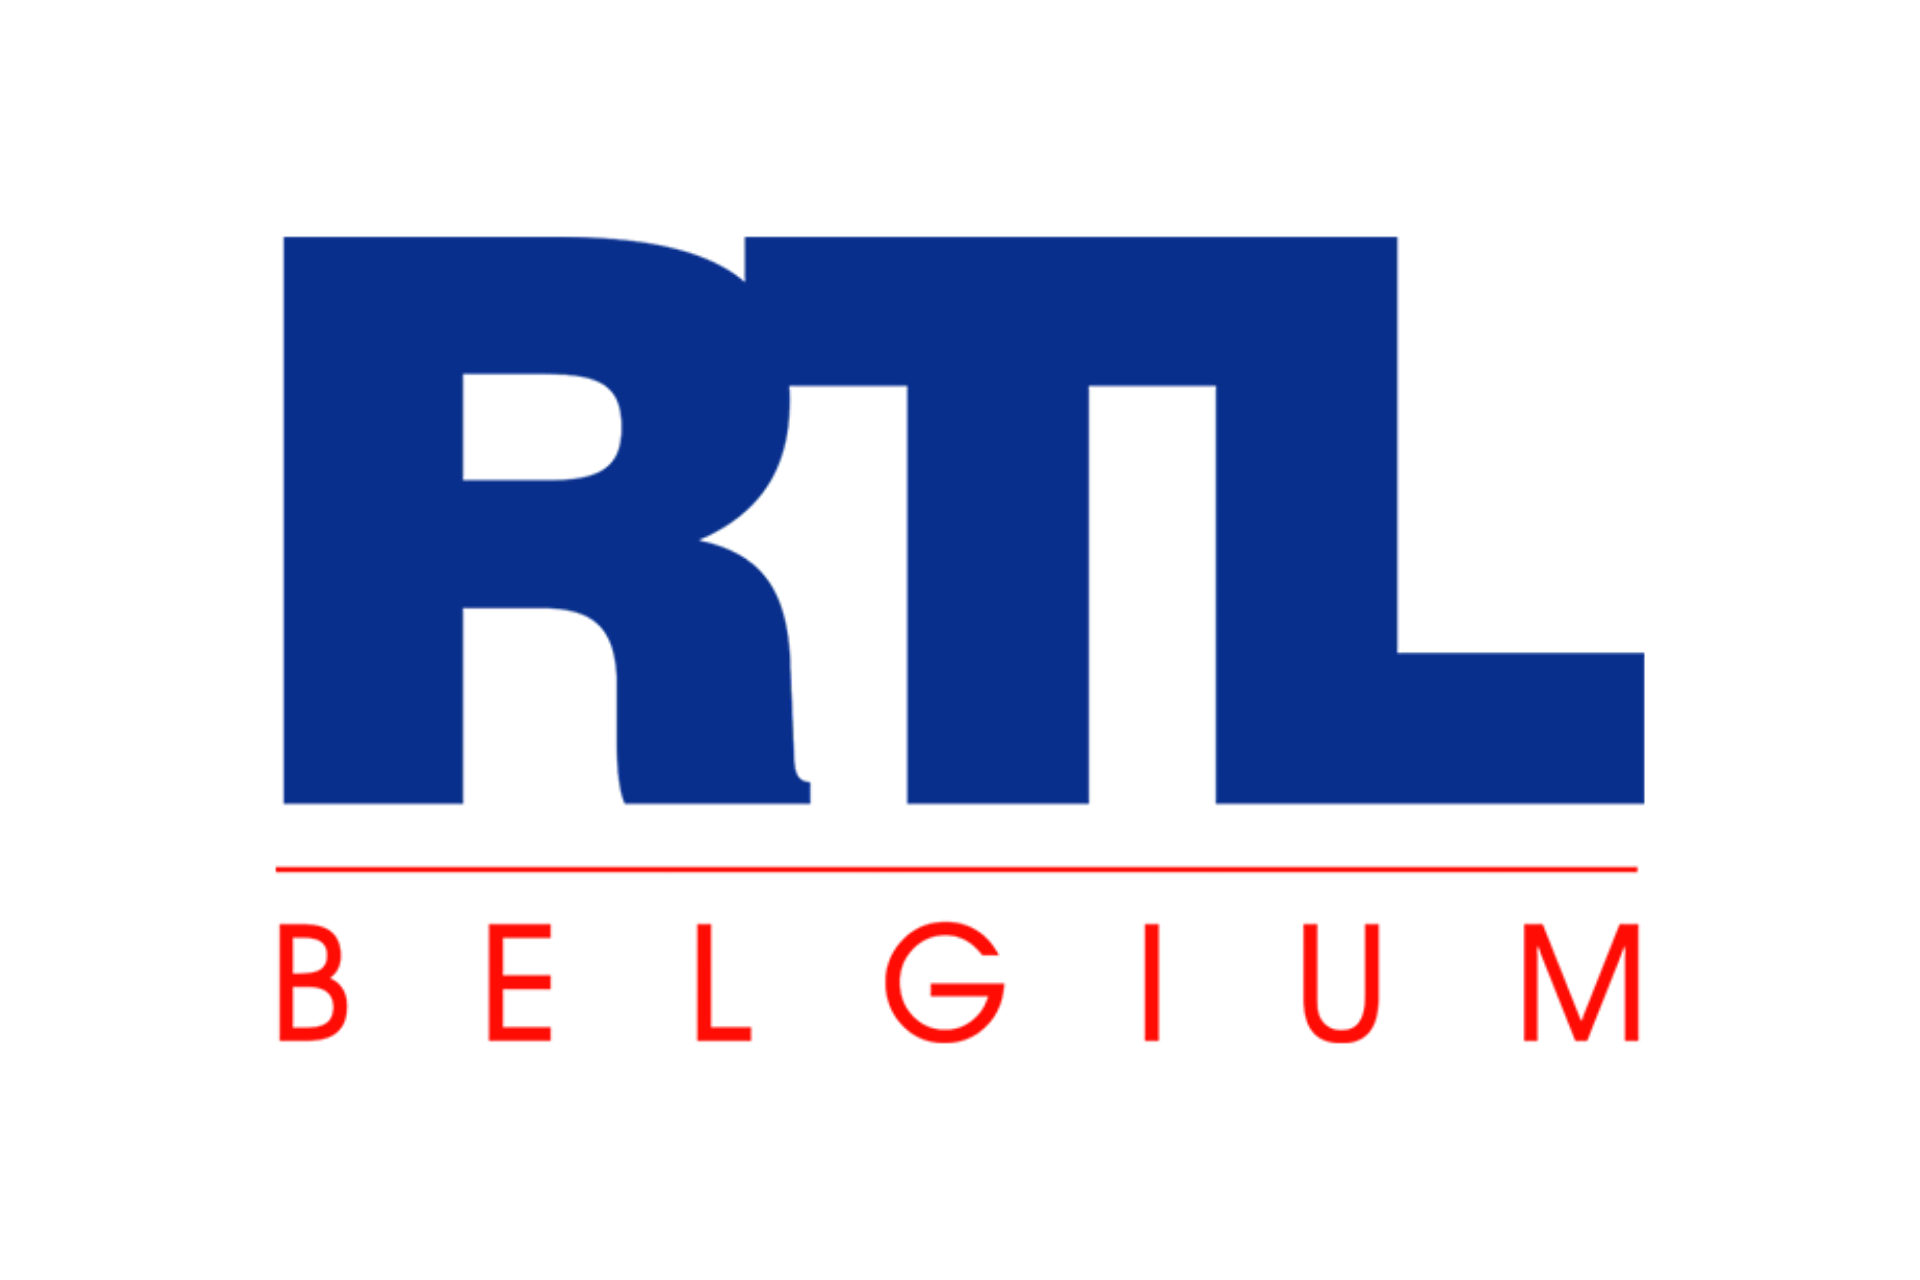 RTL Belgium